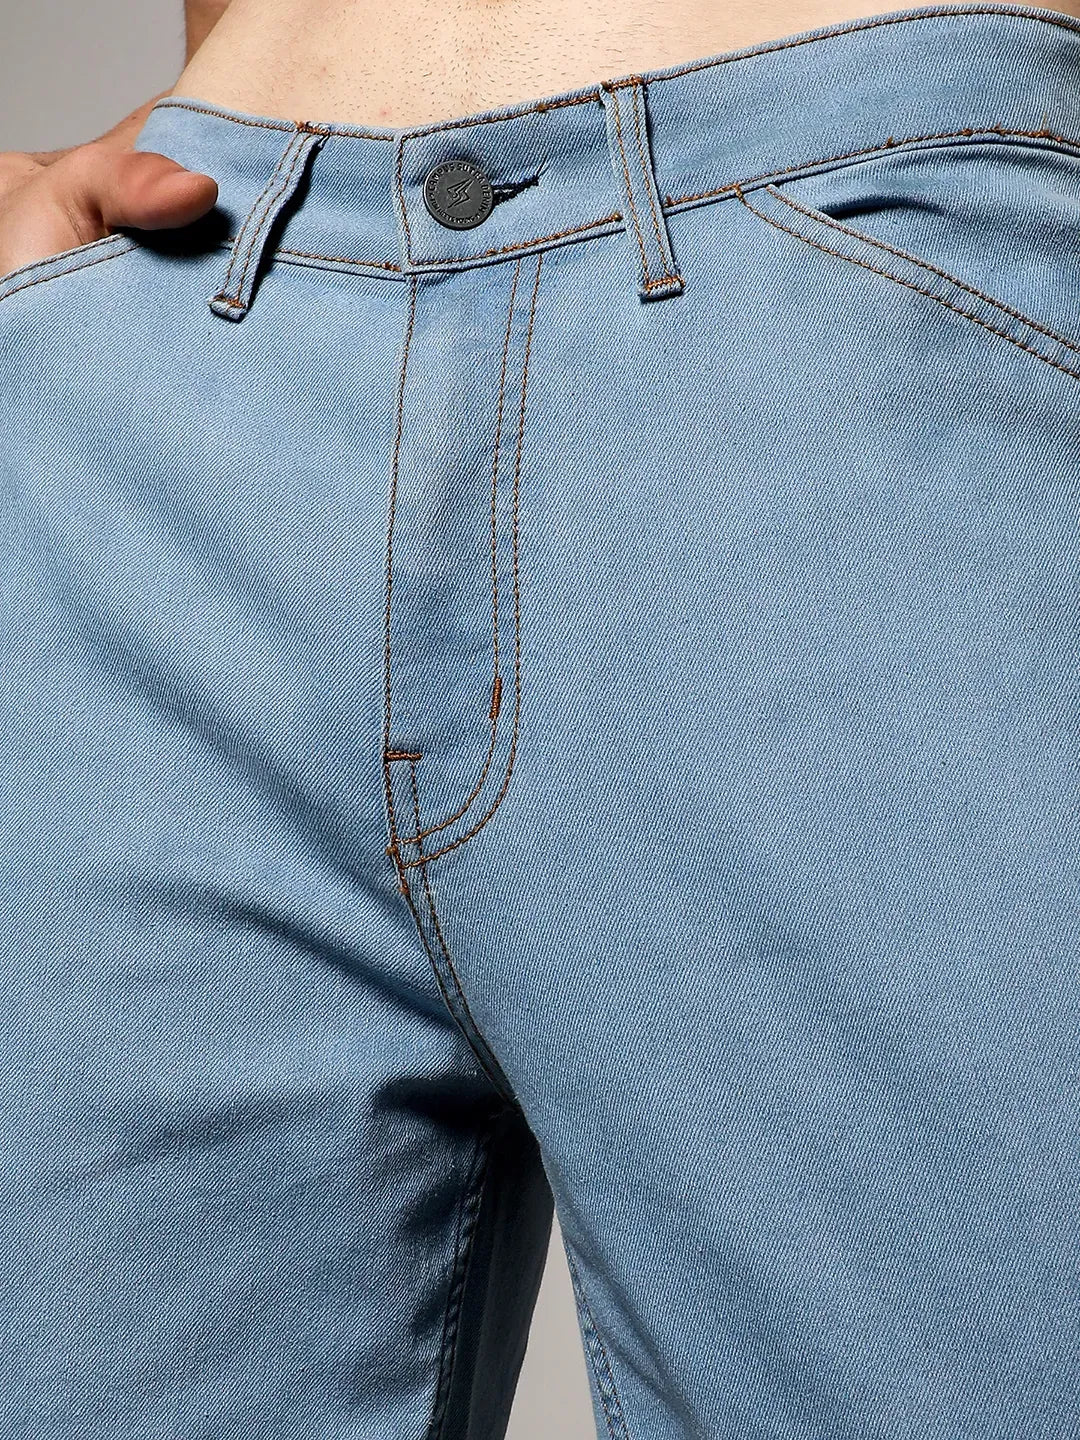 Men's Light Blue Straight Cargo Denim Jeans